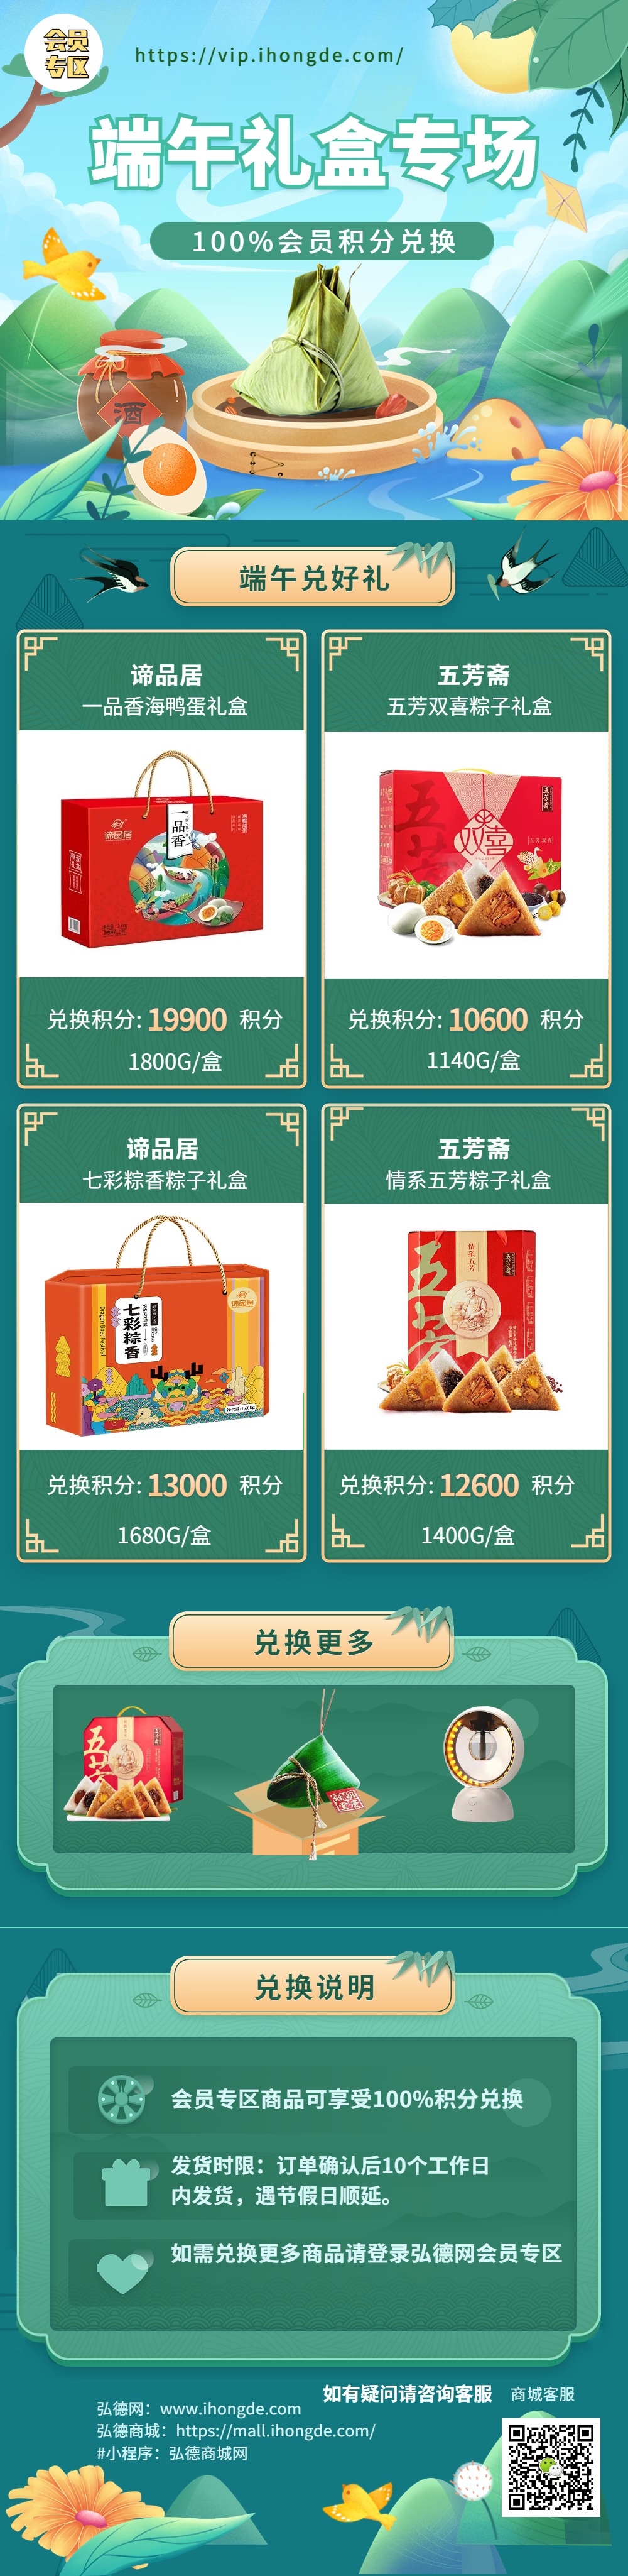 端午节餐饮粽子产品营销文章长图 (2).jpg